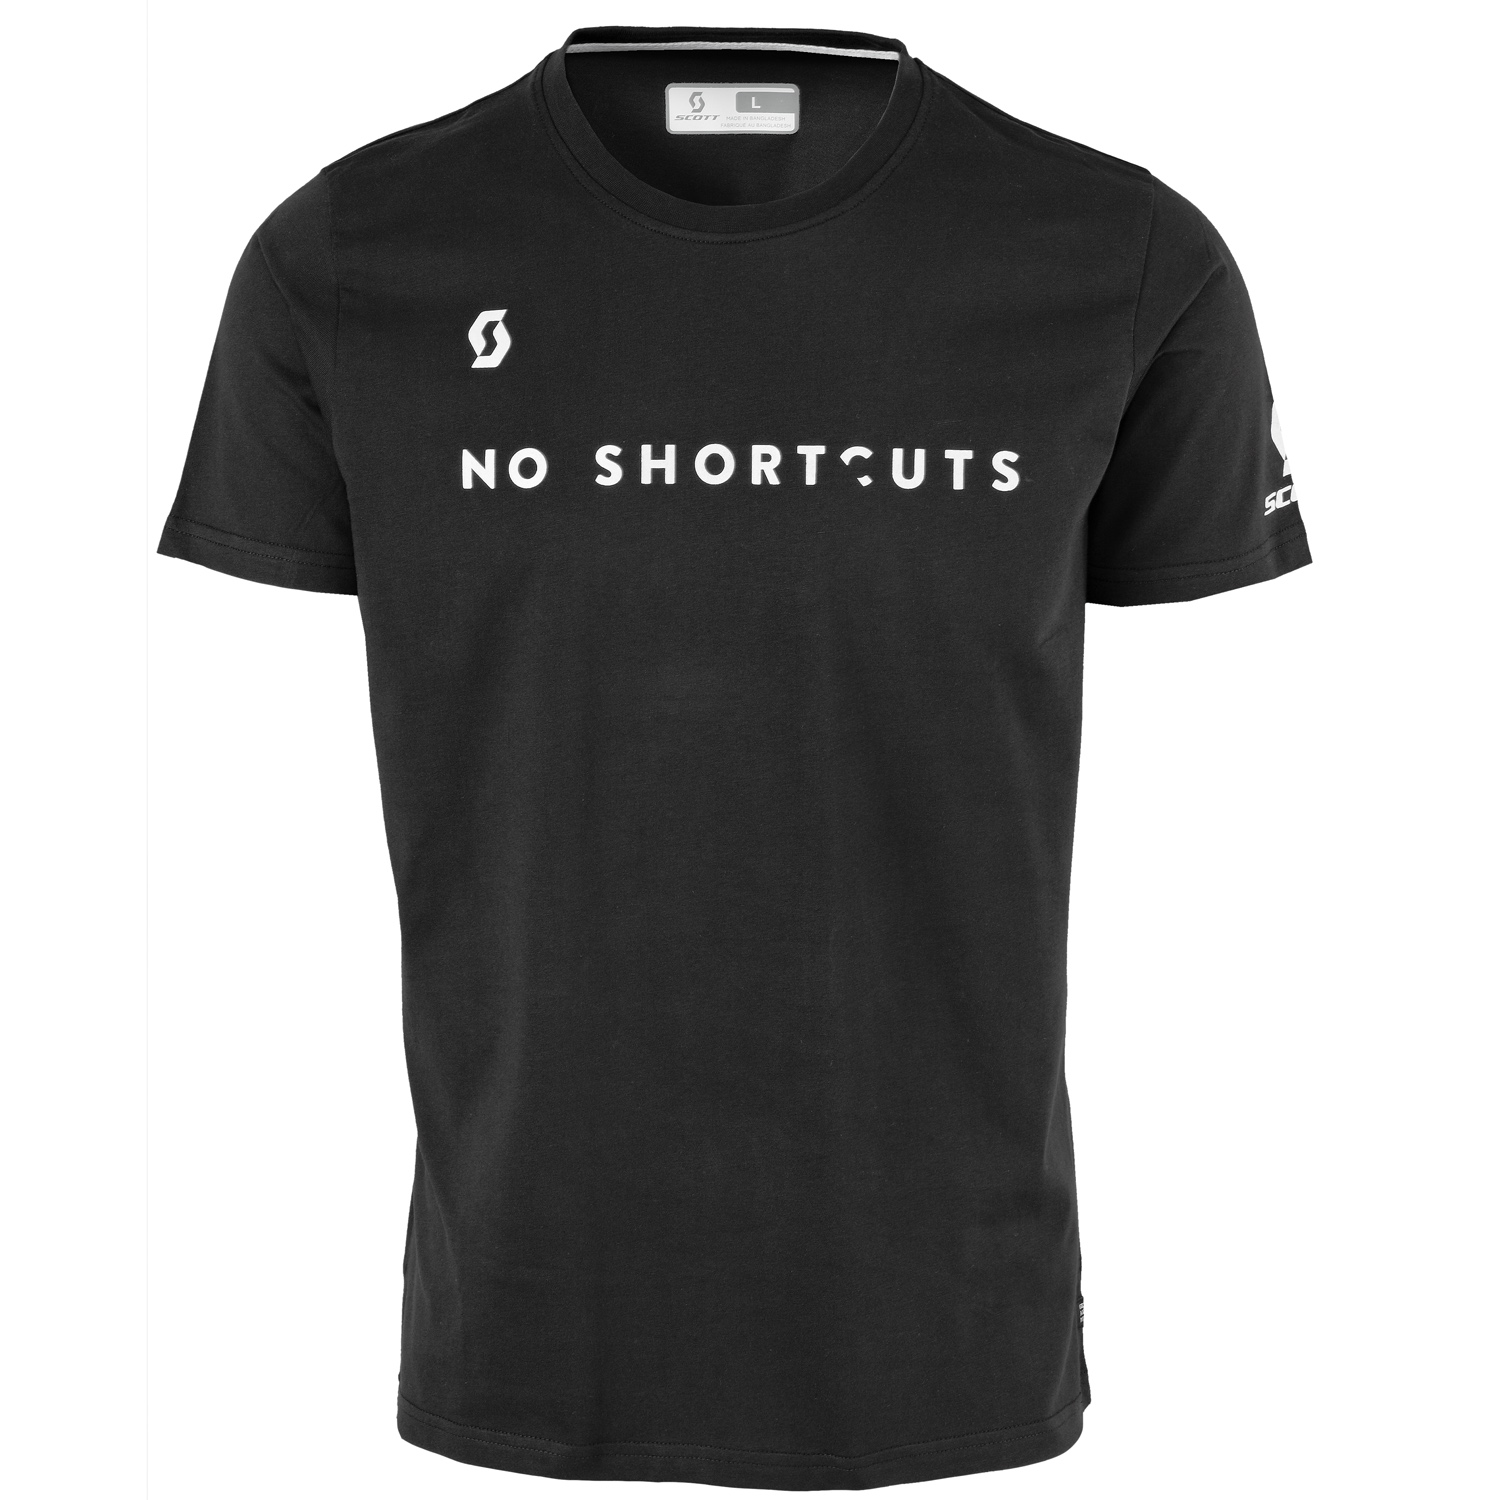 Scott T-Shirt 5 No Shortcuts Black